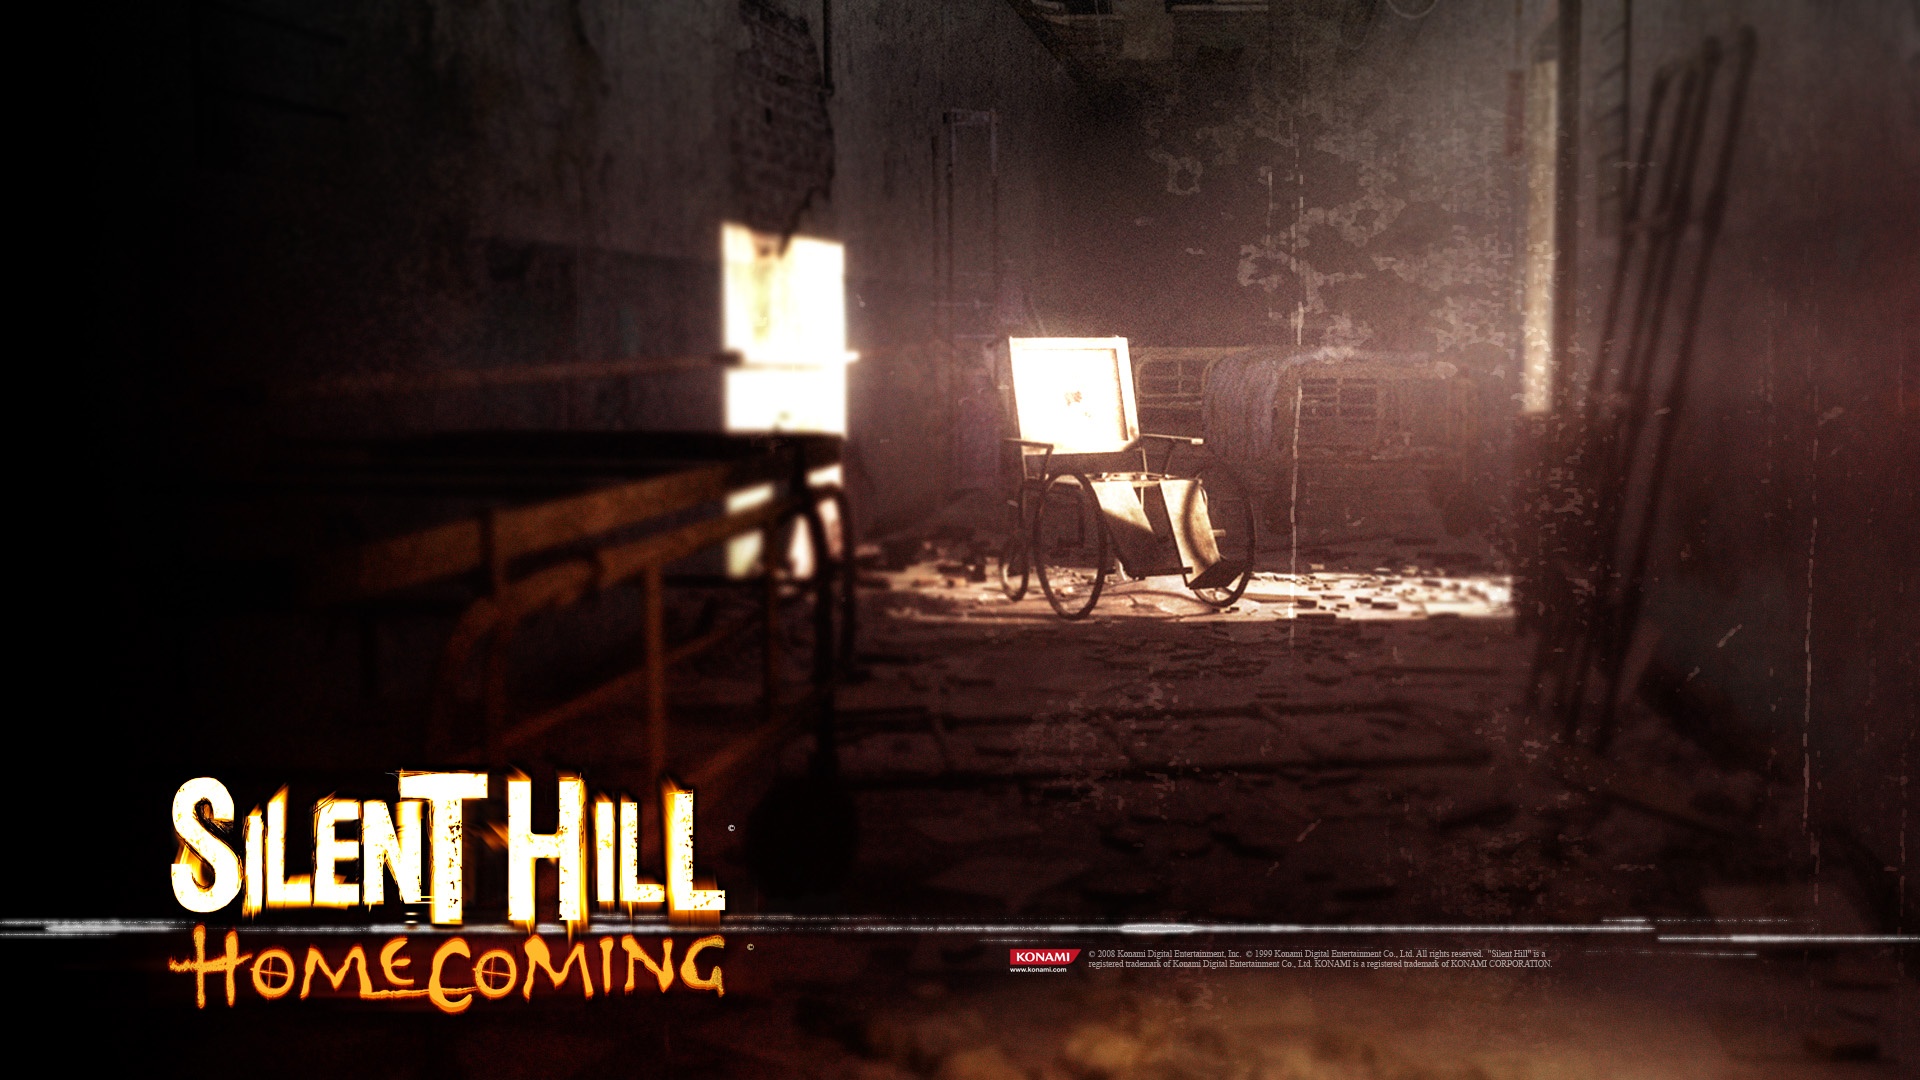 Wallpaper - Silent Hill Обои Hd , HD Wallpaper & Backgrounds